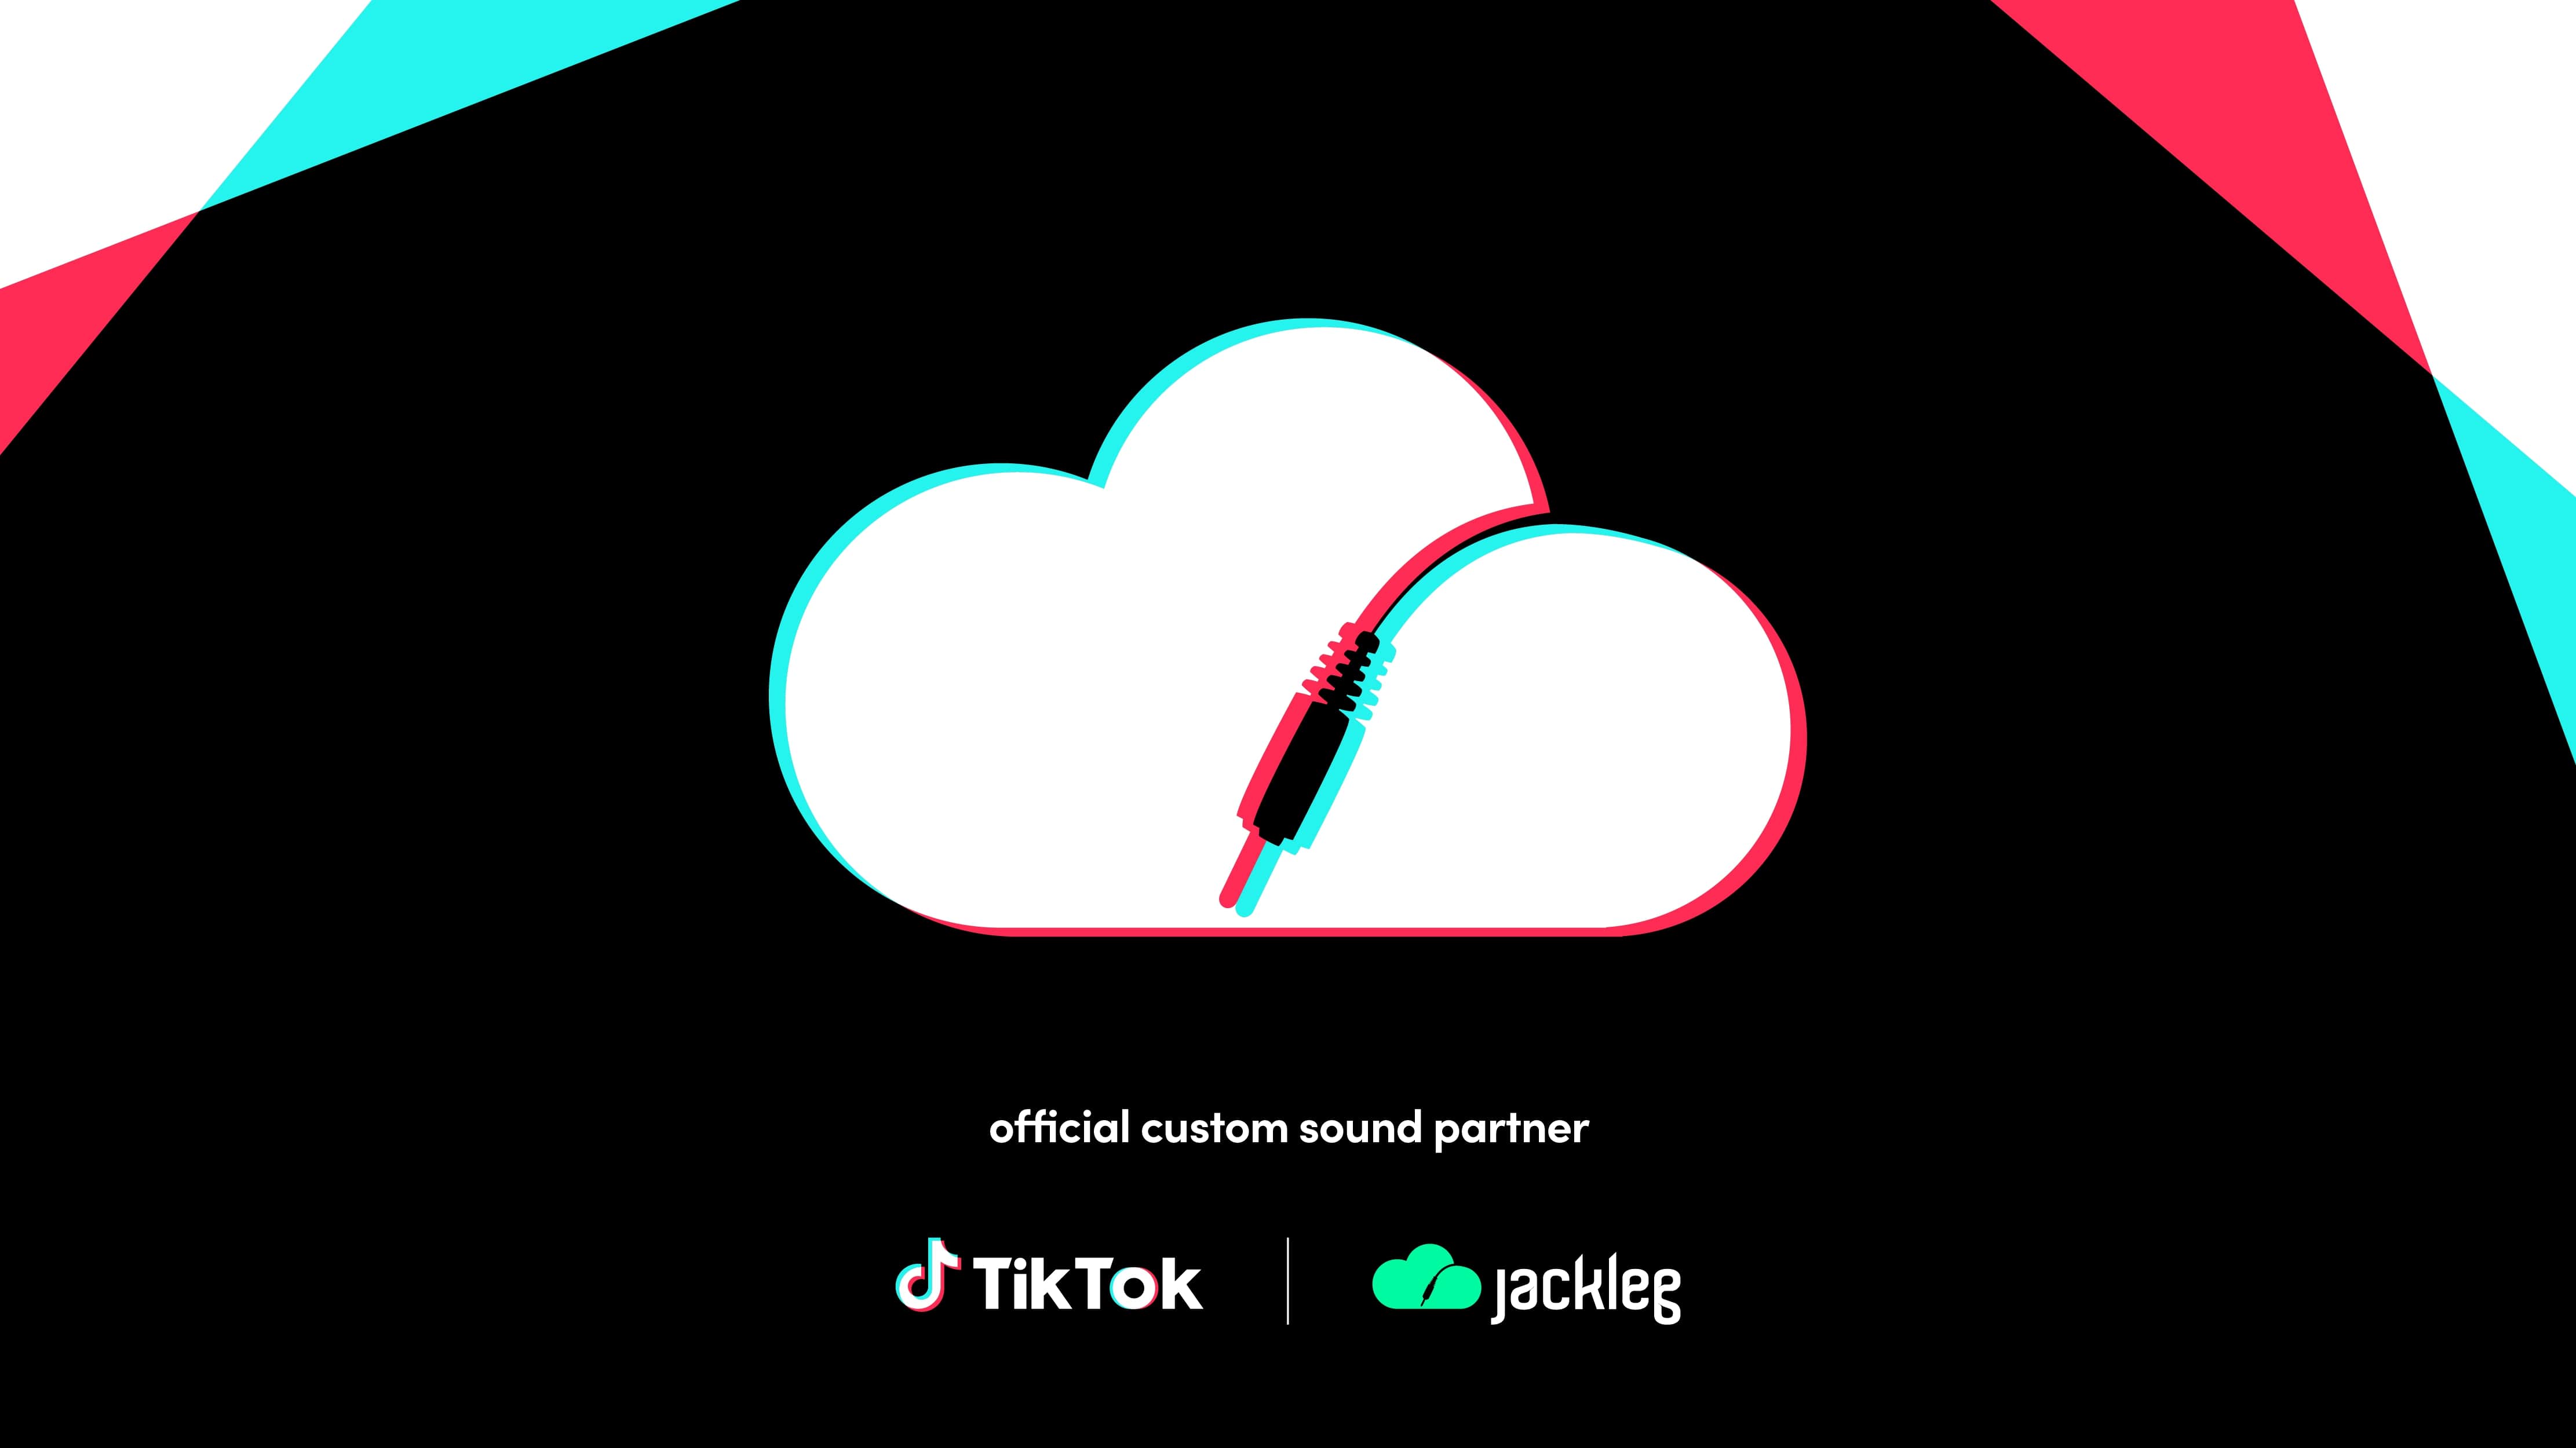 Jackleg Studio Becomes Official “Sound Partner” for Brands on TikTok